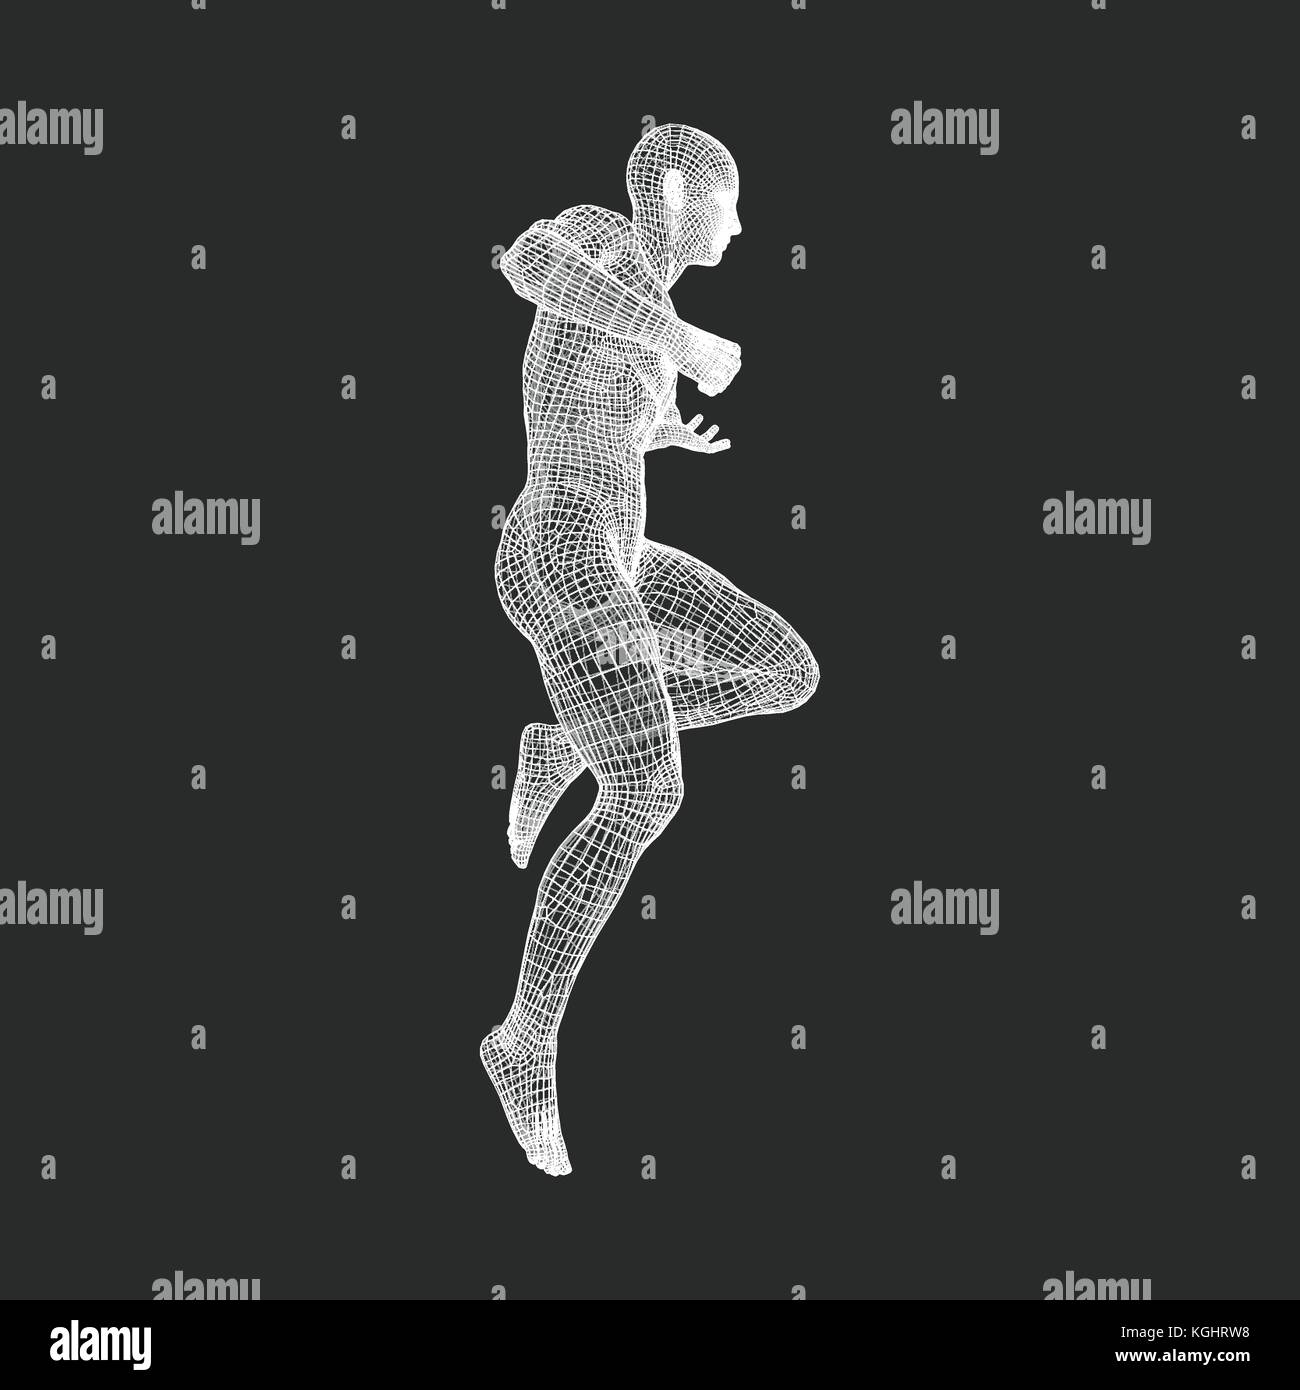 Modèle 3d de l'homme. corps humain. élément de conception, modèle de fil de la technologie. vector illustration. Illustration de Vecteur